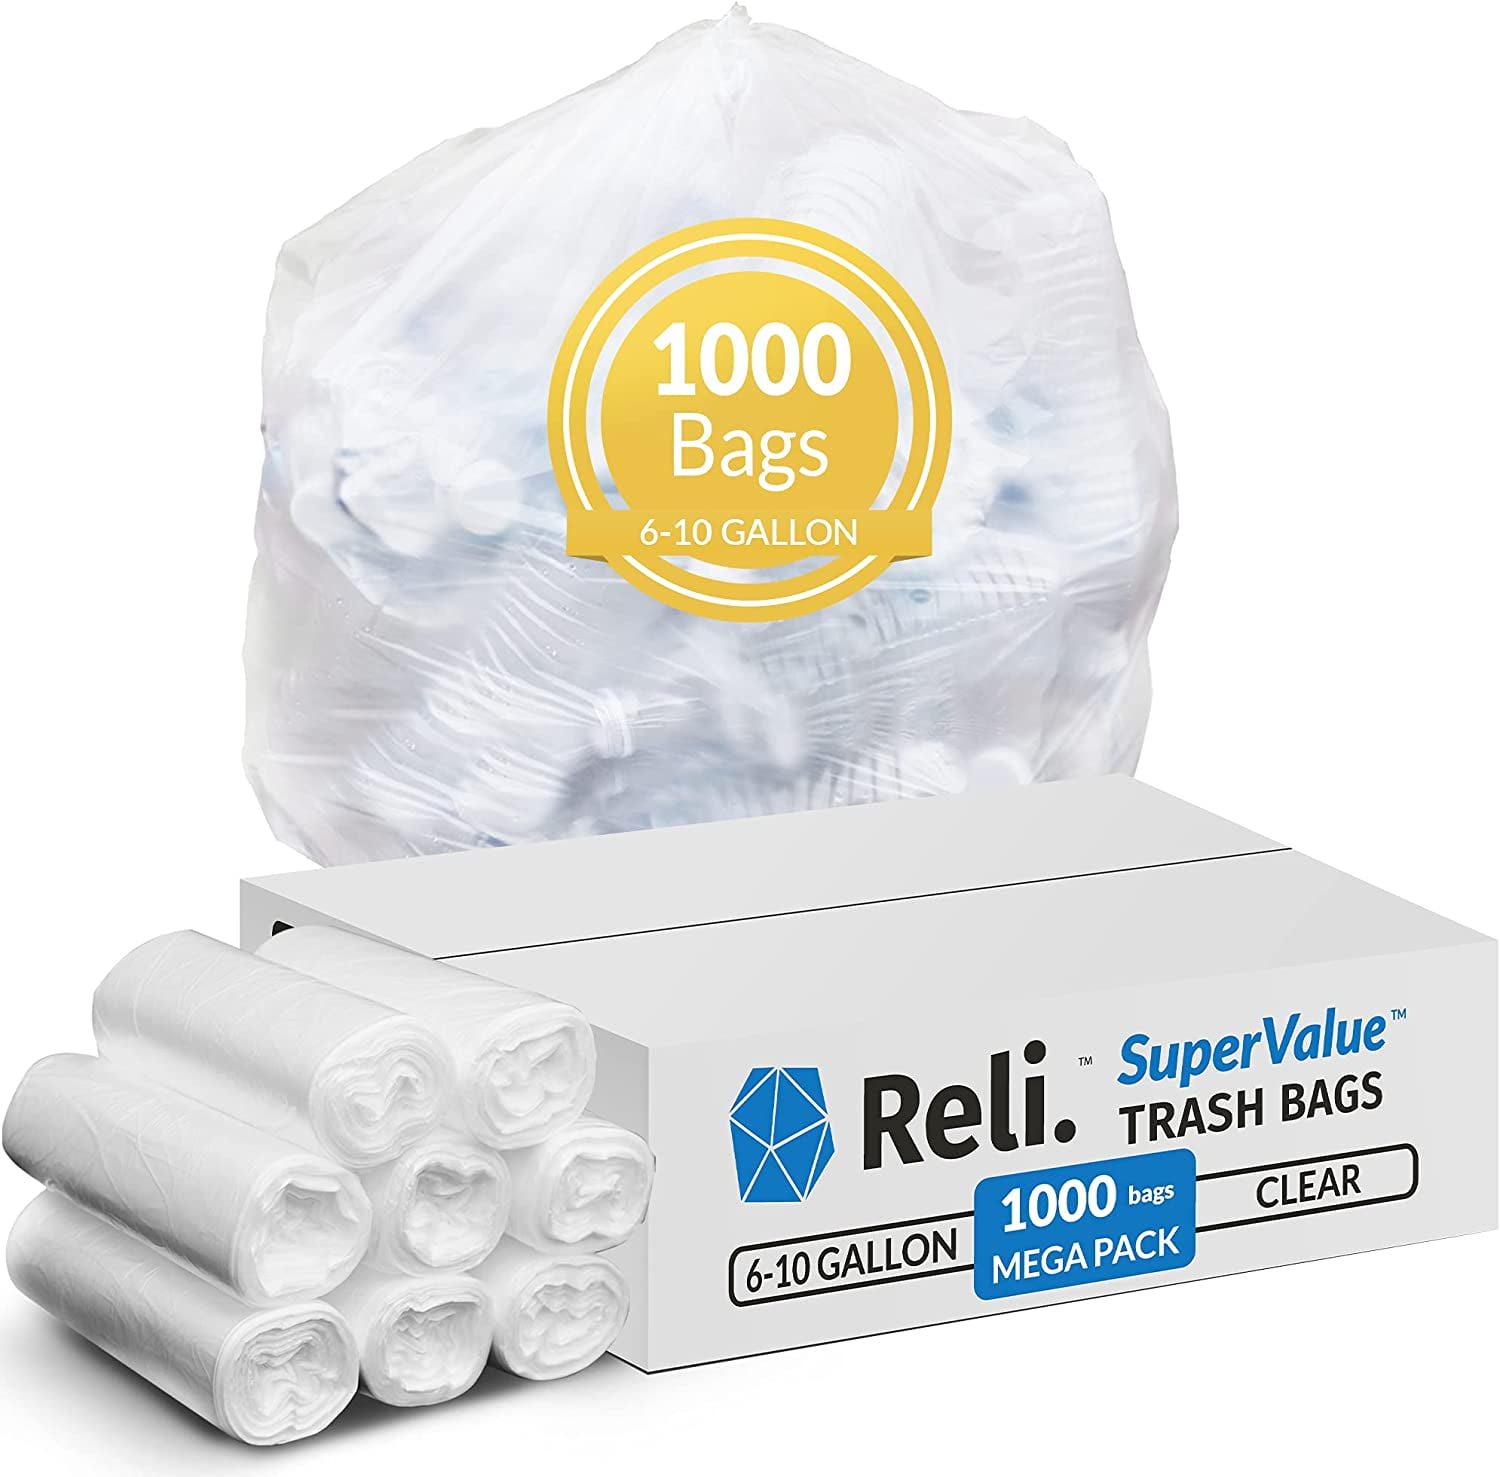 50 Small to Medium Trash Bags, 7-8-9-10 Gallon Trash Bags